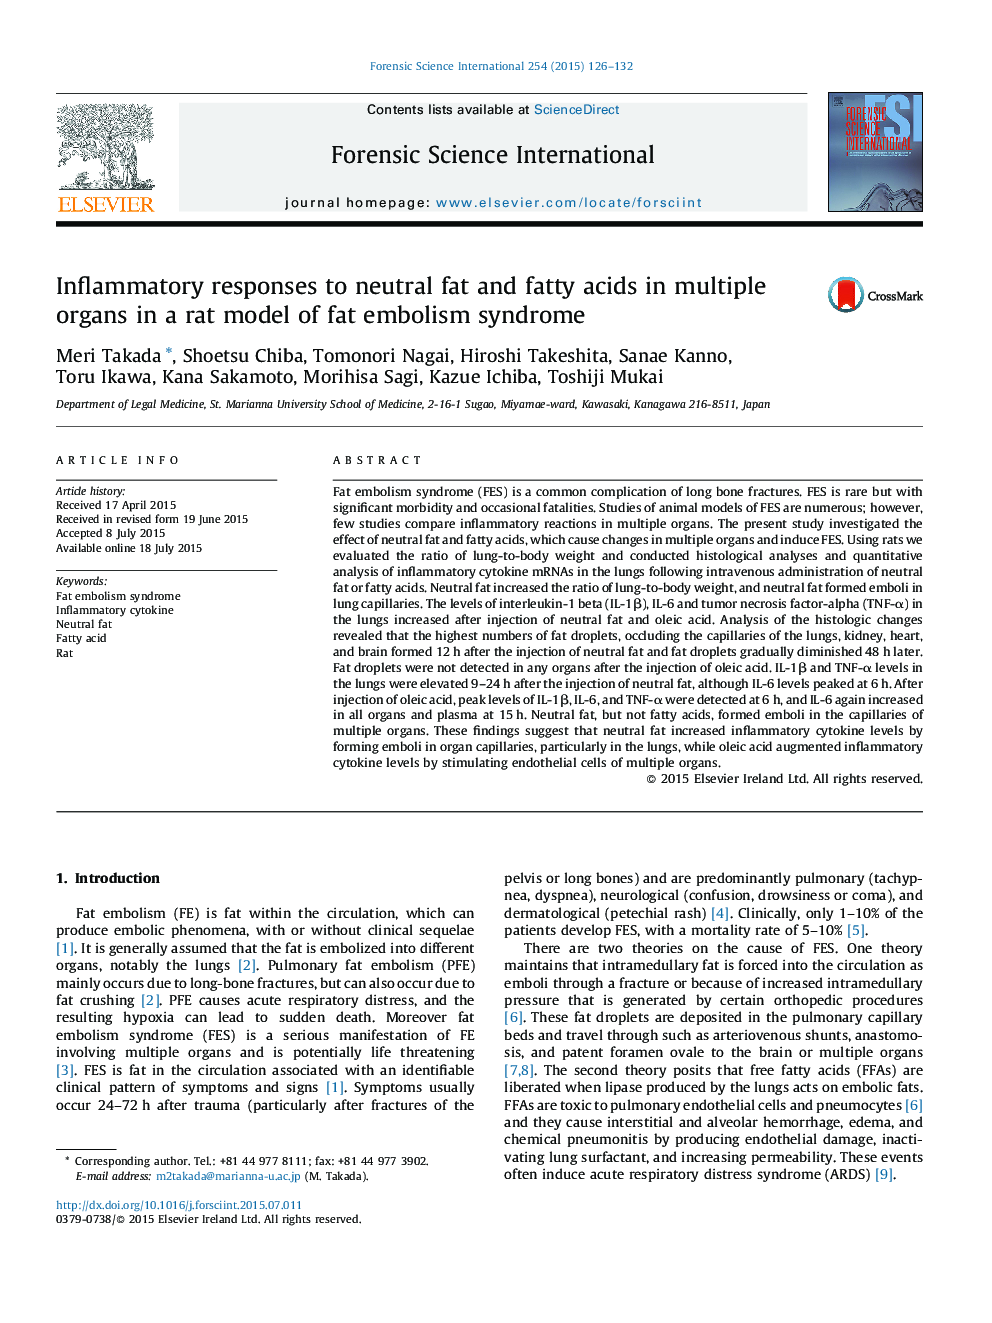 پاسخ های التهابی به چربی خنثی و اسیدهای چرب در اندام های مختلف در یک مدل موش سندرم آمبولیسم چربی